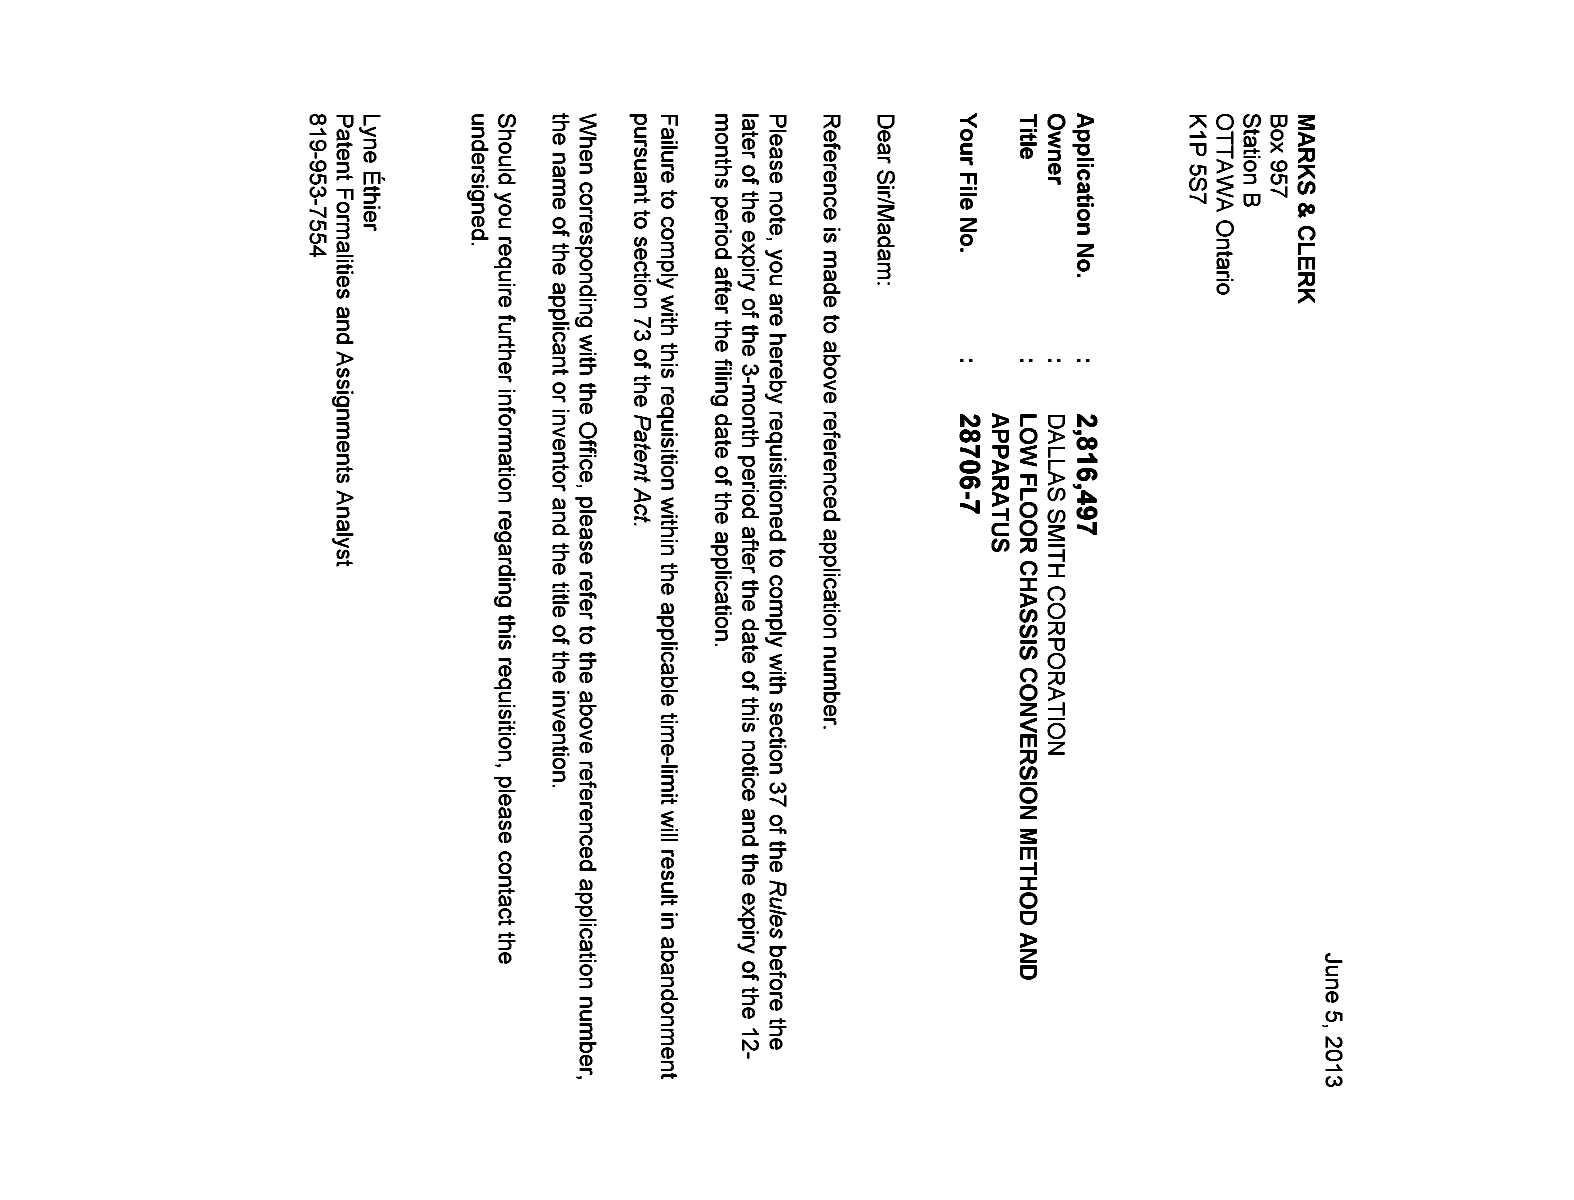 Document de brevet canadien 2816497. Correspondance 20121205. Image 1 de 1